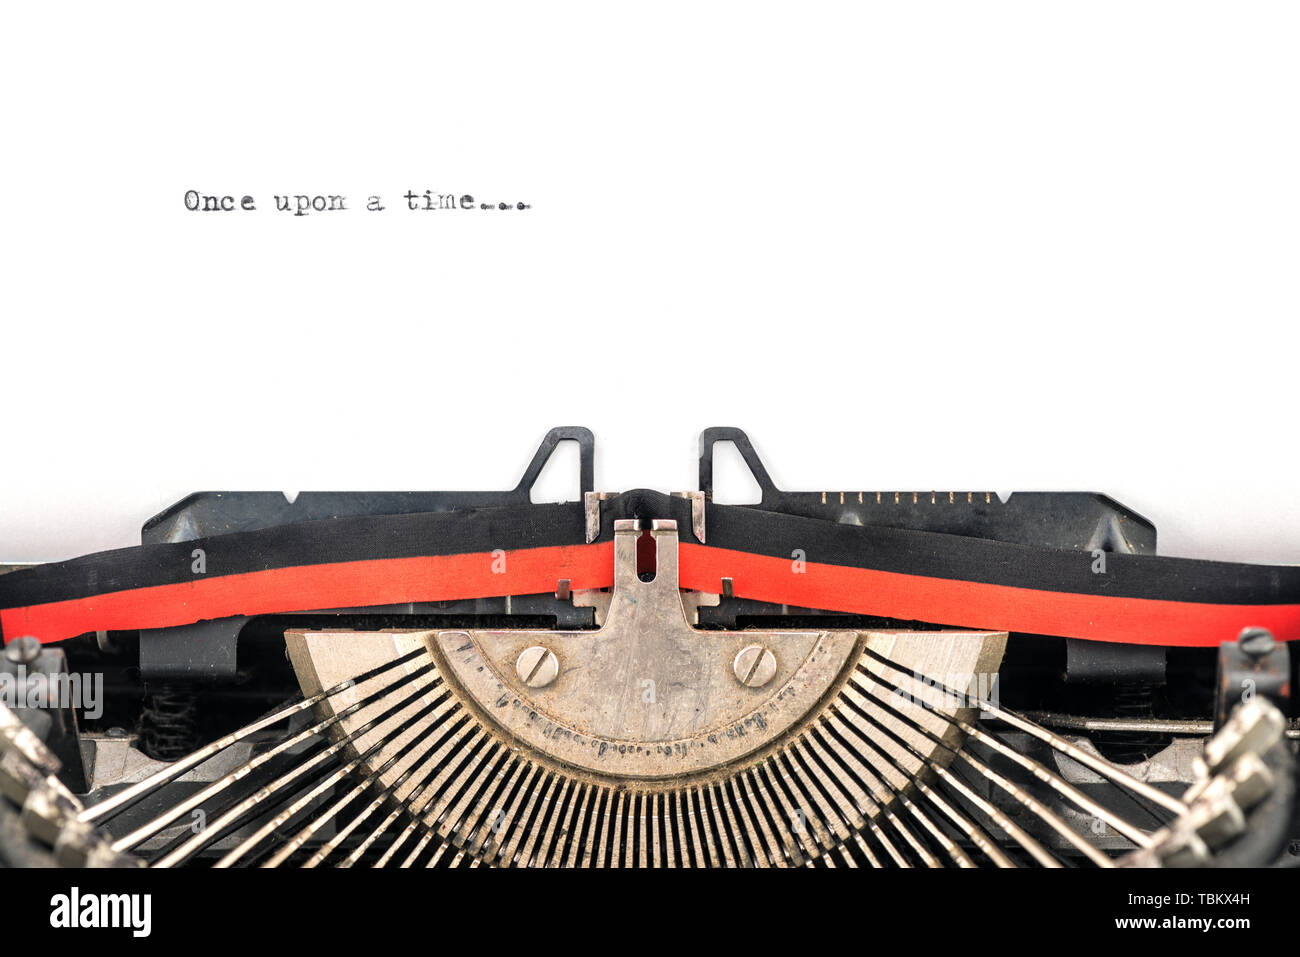 Fermer la vue de type machine à écrire vintage bars prêt à saisir une nouvelle histoire sur une feuille en commençant par il était une fois Banque D'Images